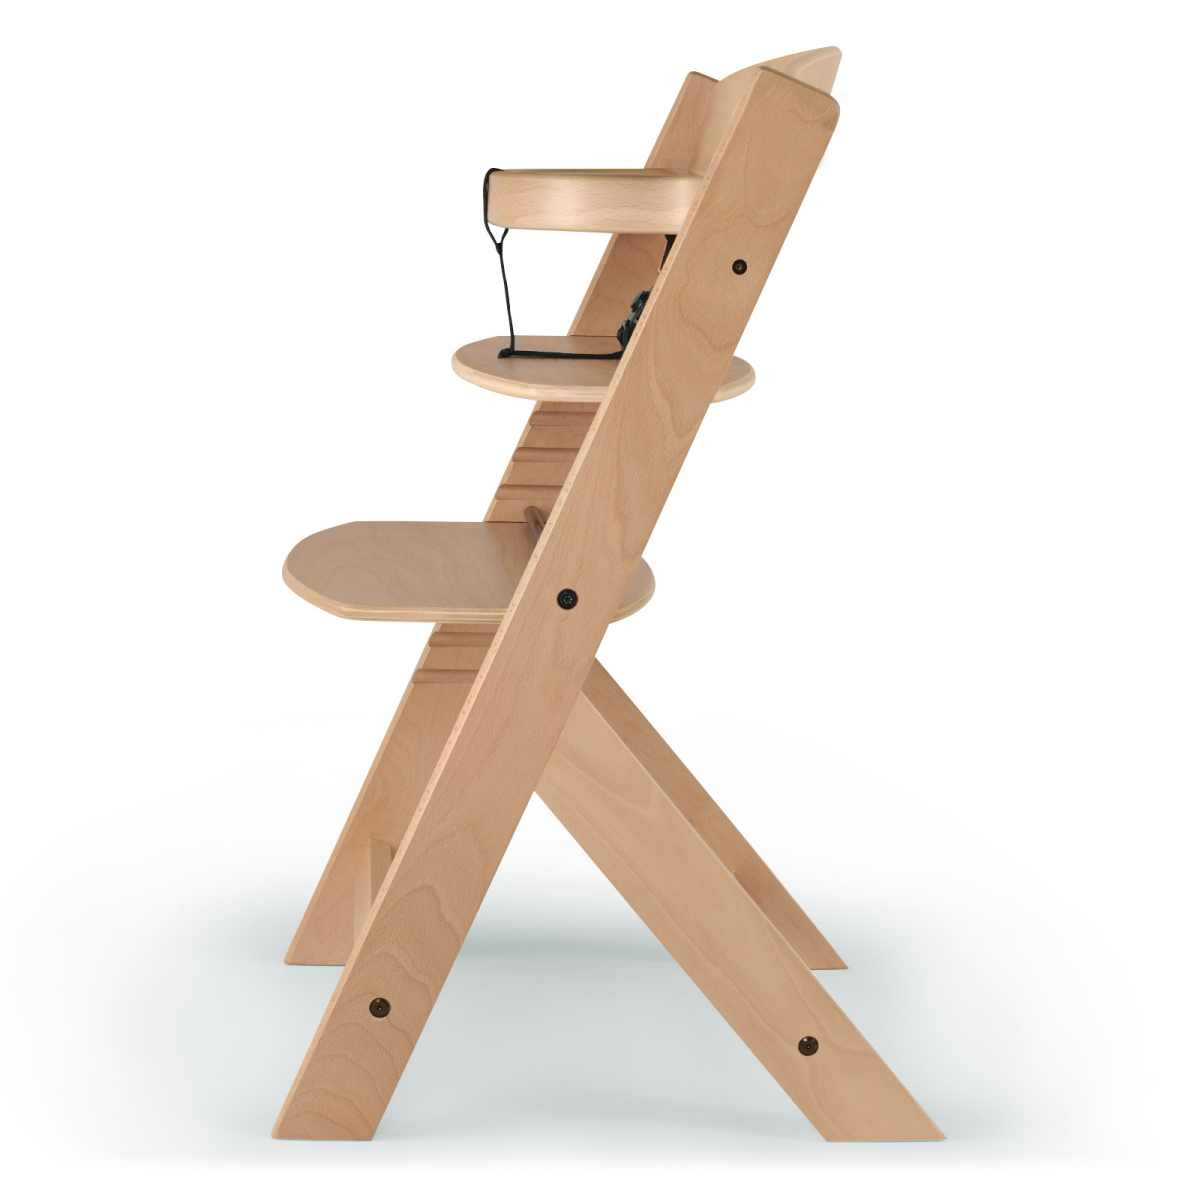 Chaise haute évolutive bois